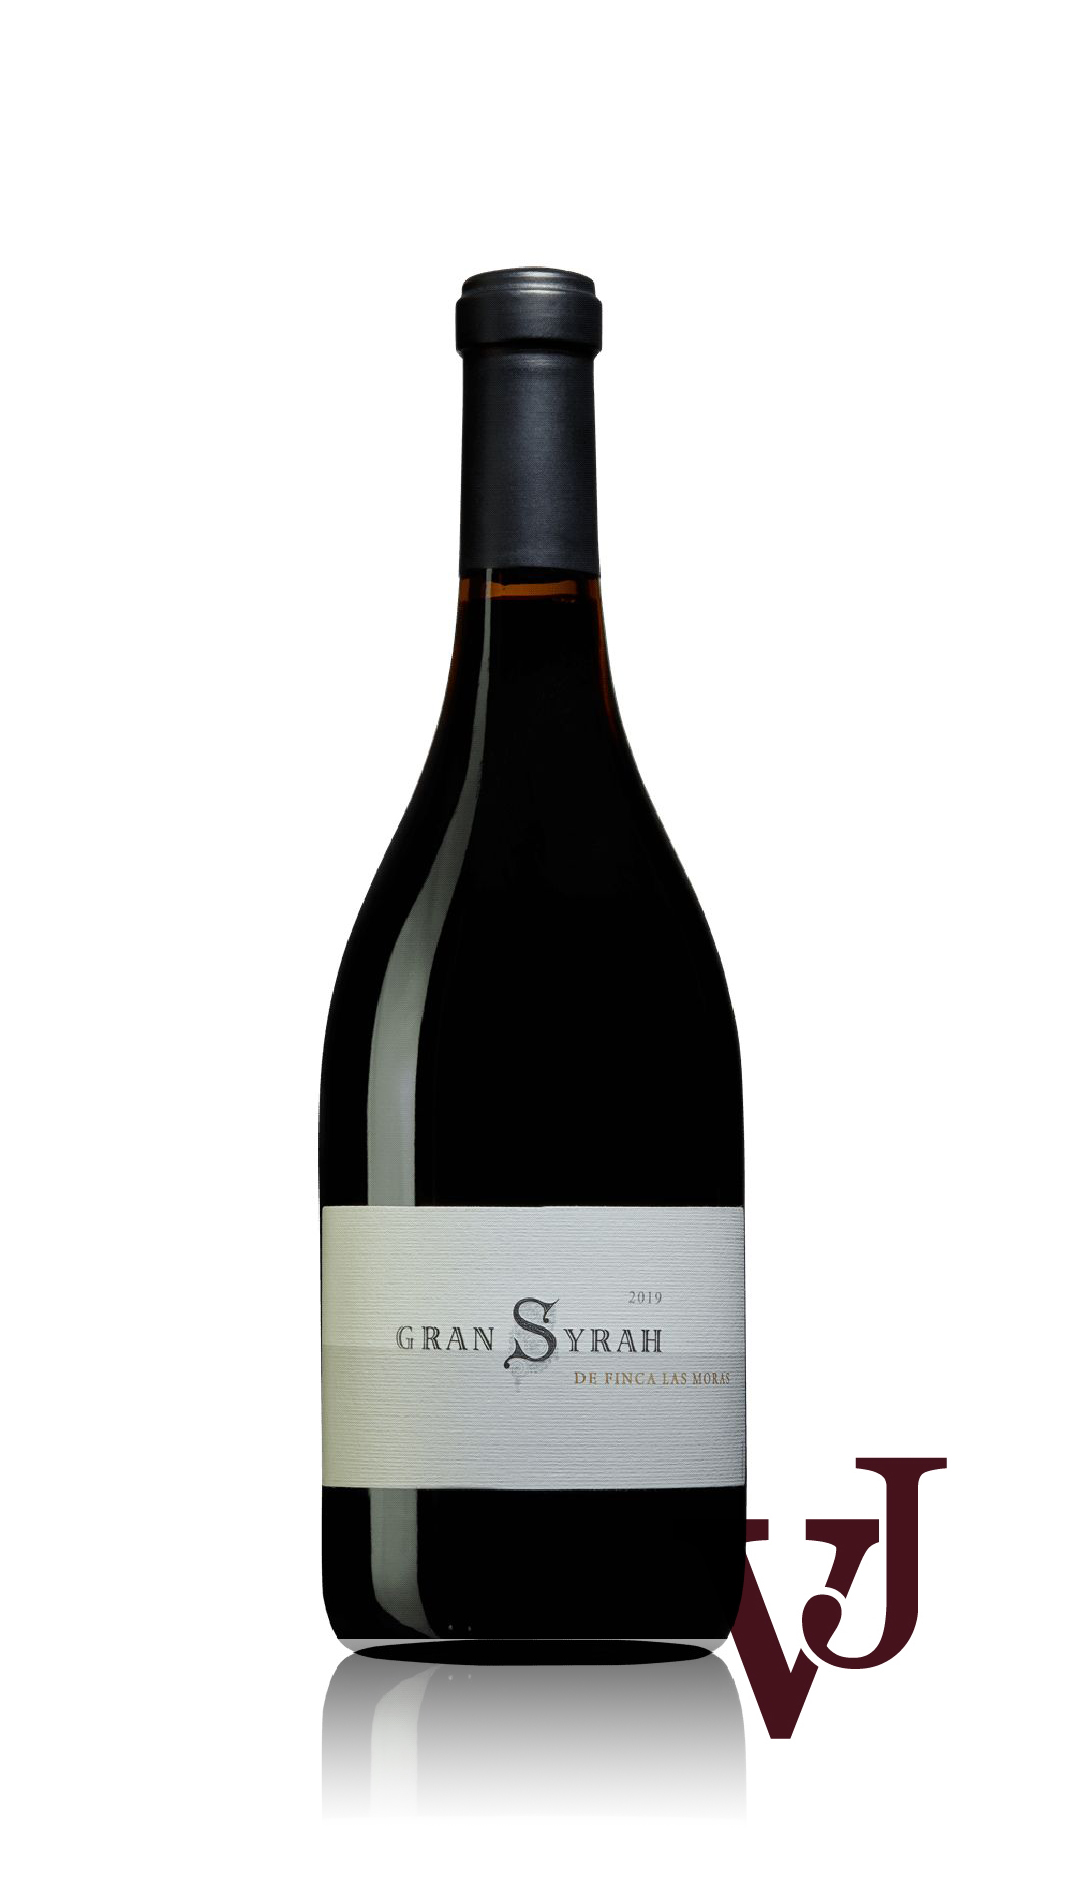 Rött Vin - Las Moras Gran Syrah 2019 artikel nummer 9037801 från producenten Finca Las Moras från området Argentina